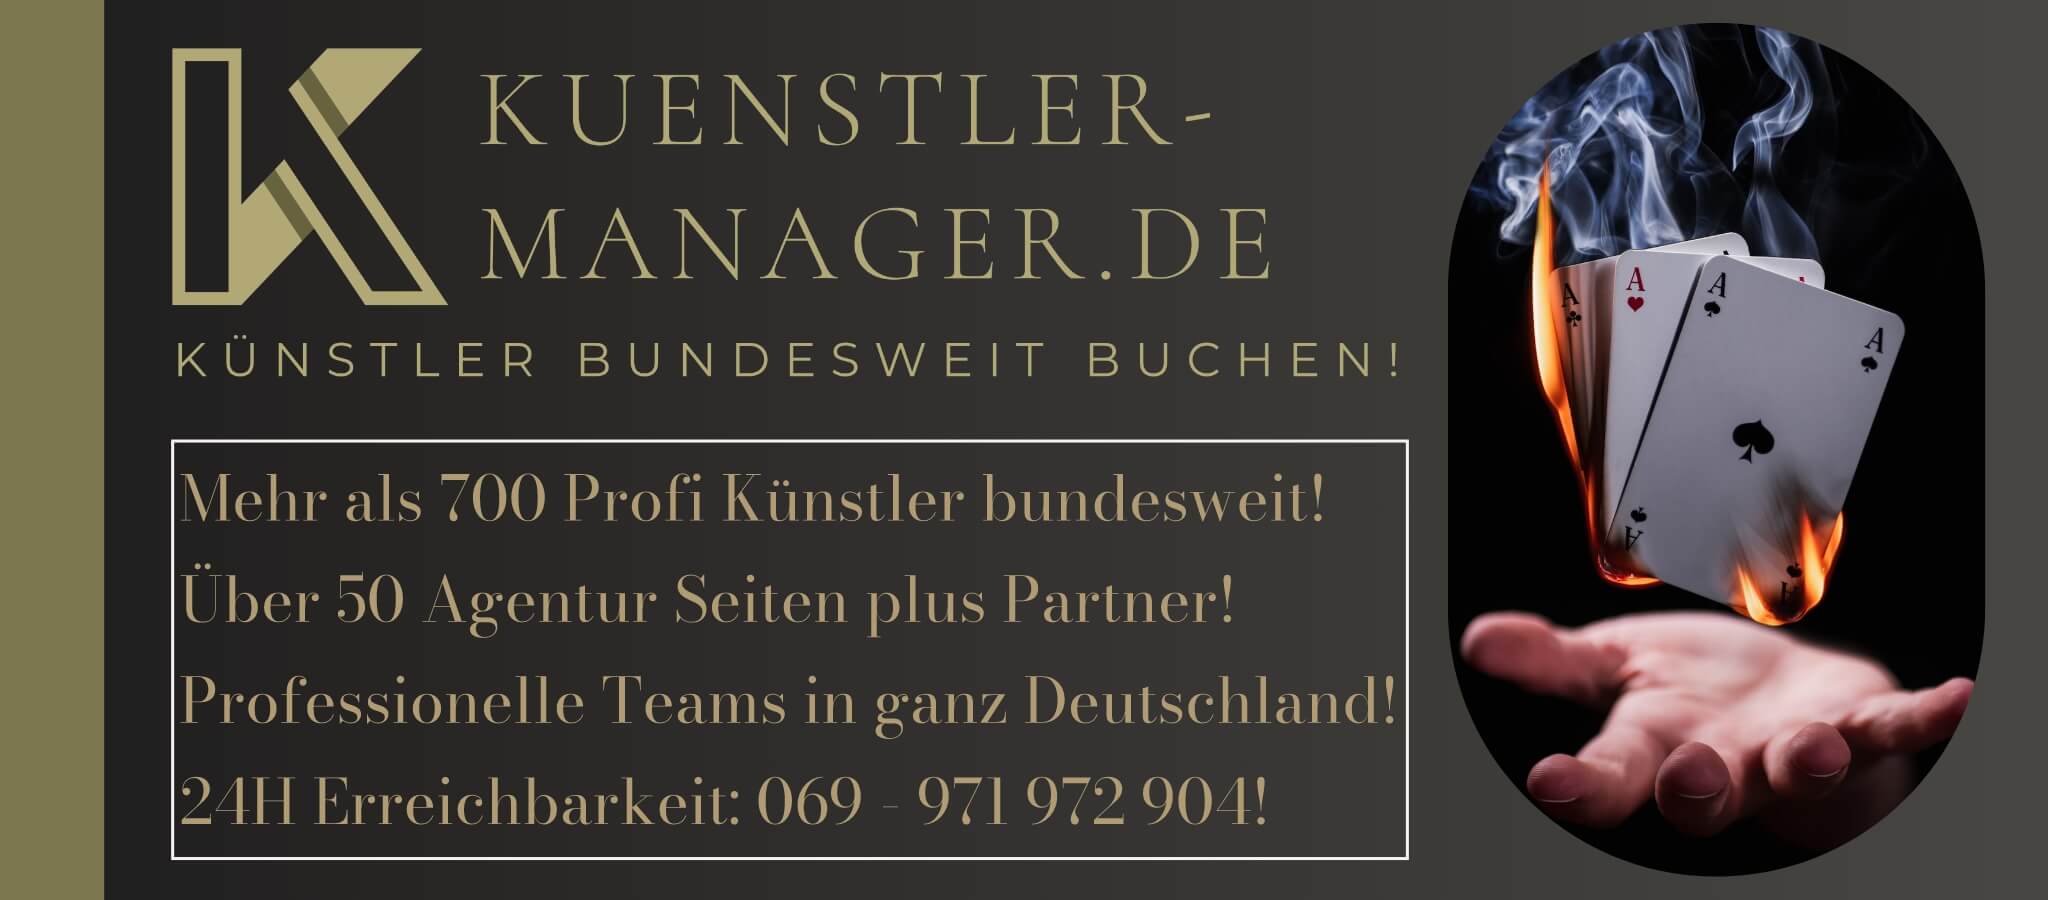 Kuenstler-Manager.de Grafik